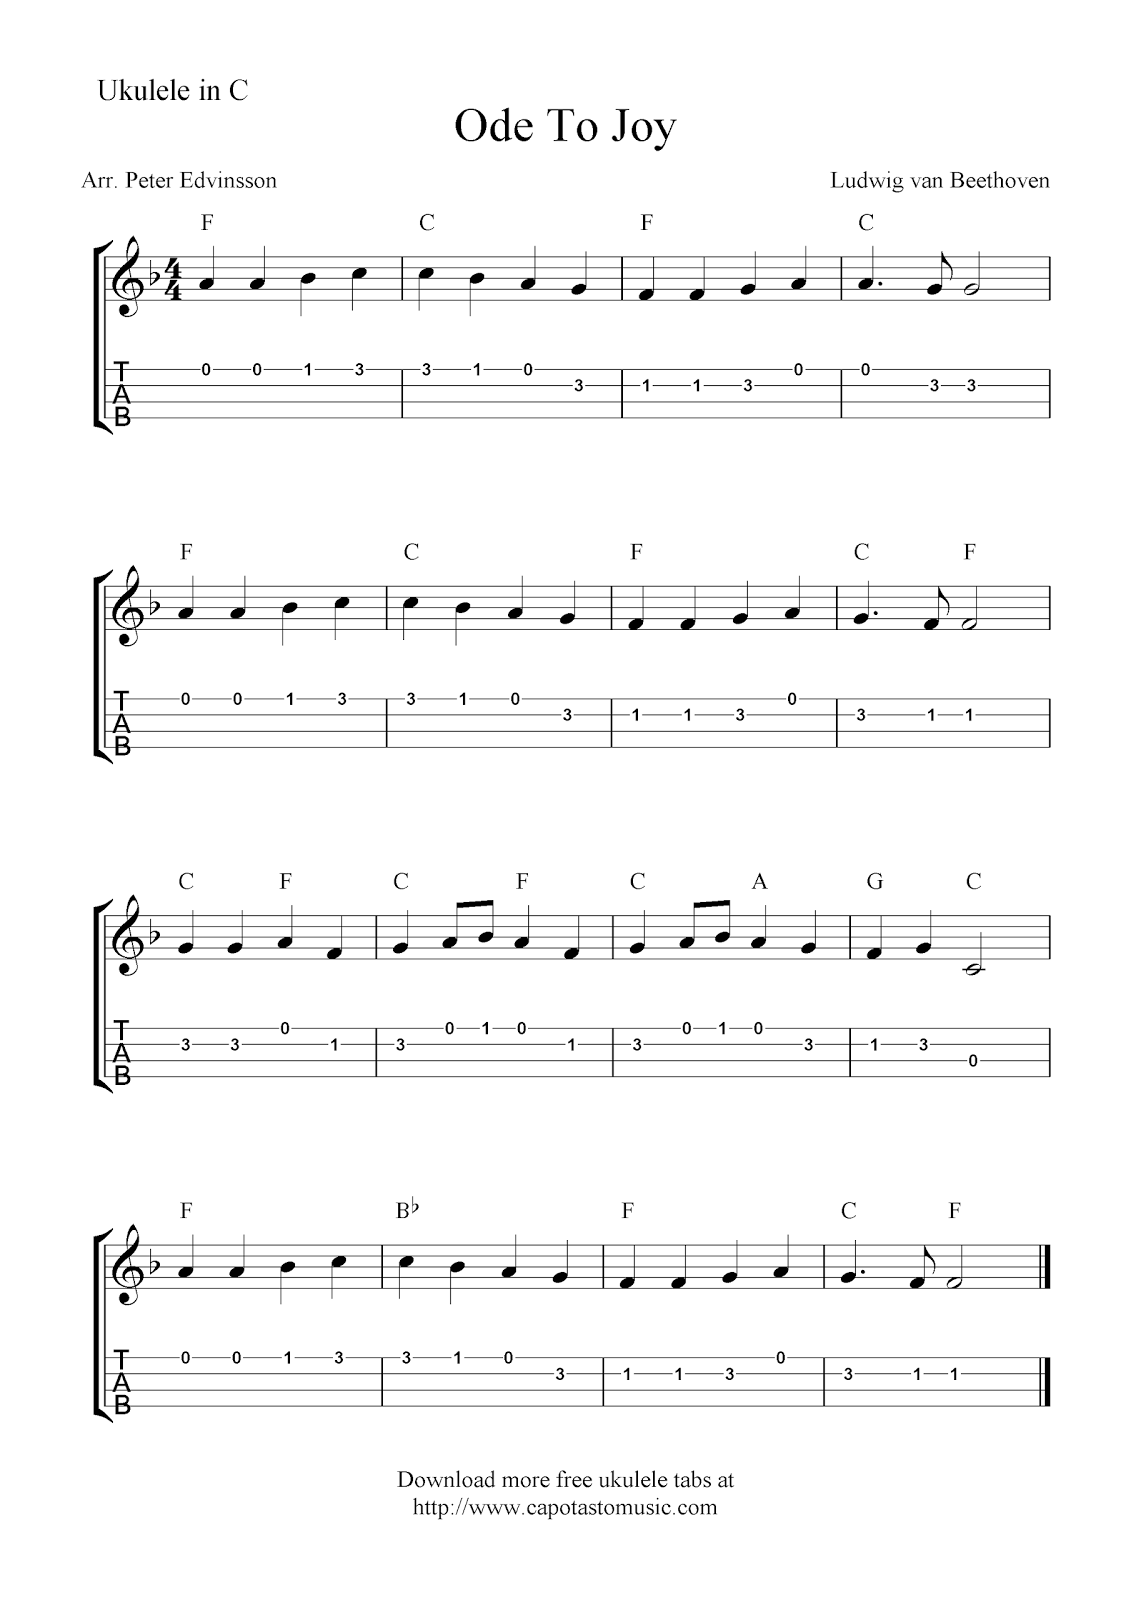 ukulele sheet for music beginner Joy, free To Sheet Music Scores: Ode sheet tab Free music ukulele